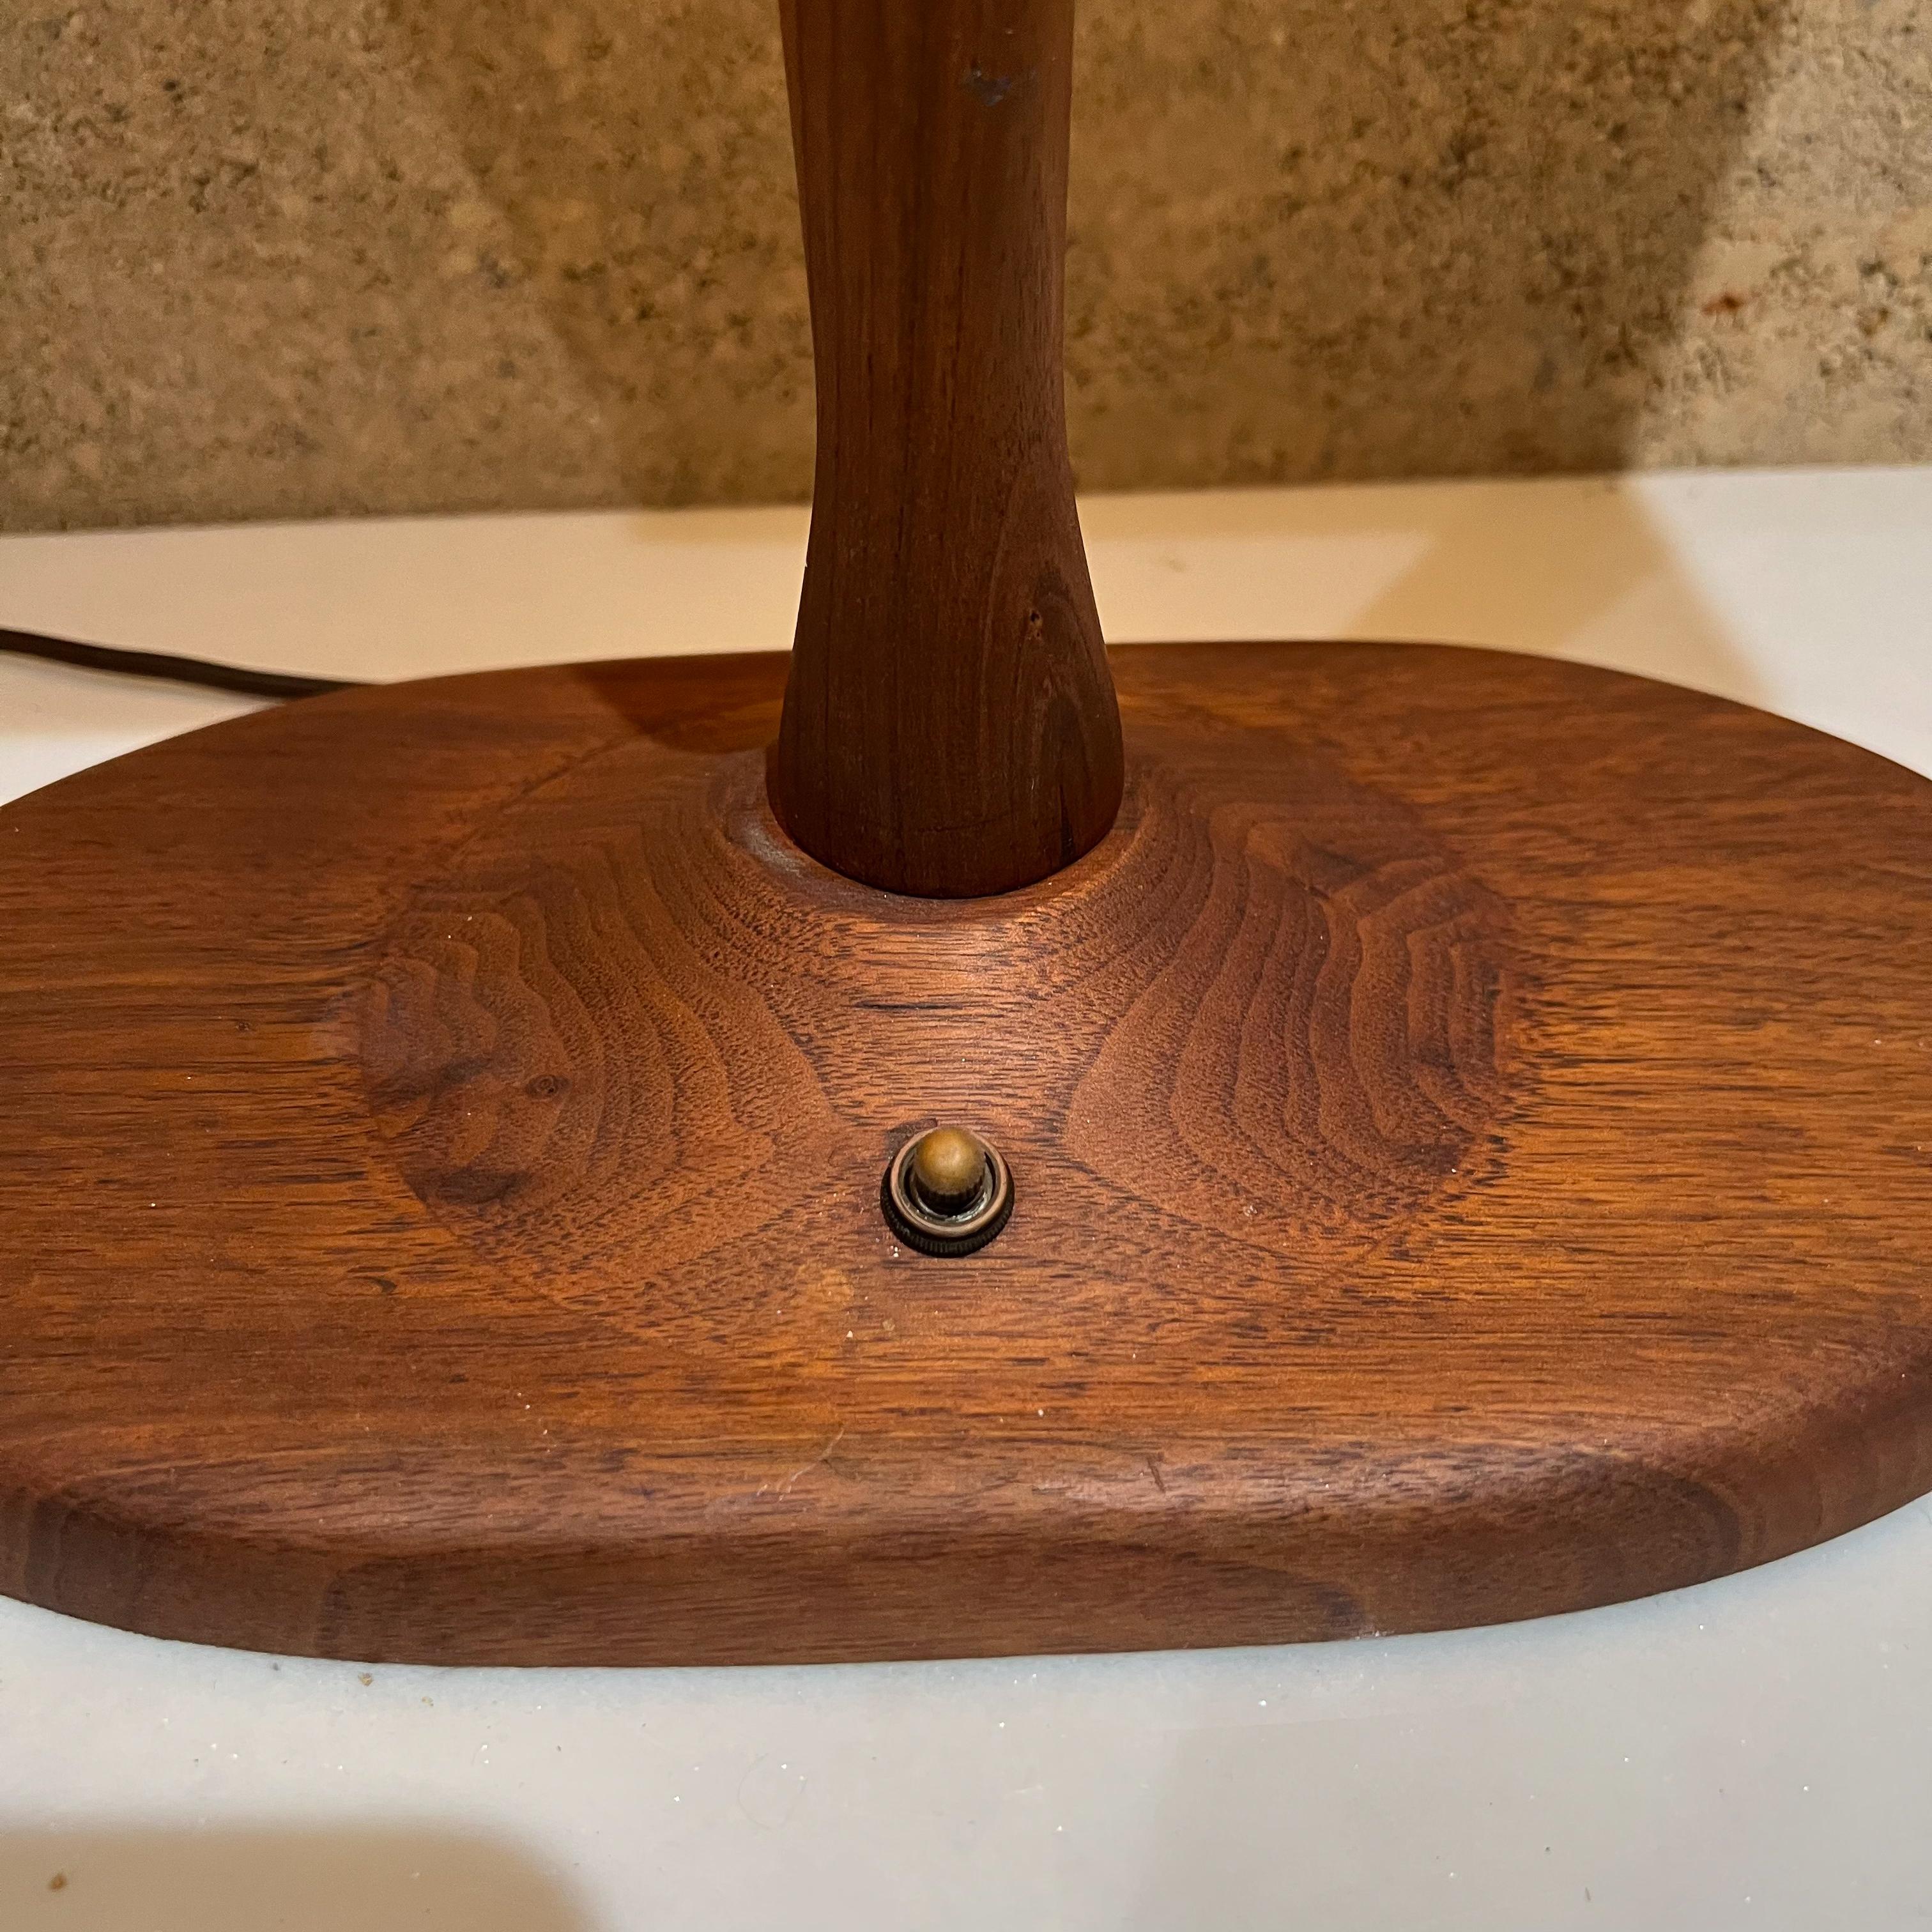 1960s Midcentury Modern Warm Walnut Wood Desk Lamp Organic Beauty For Sale 4